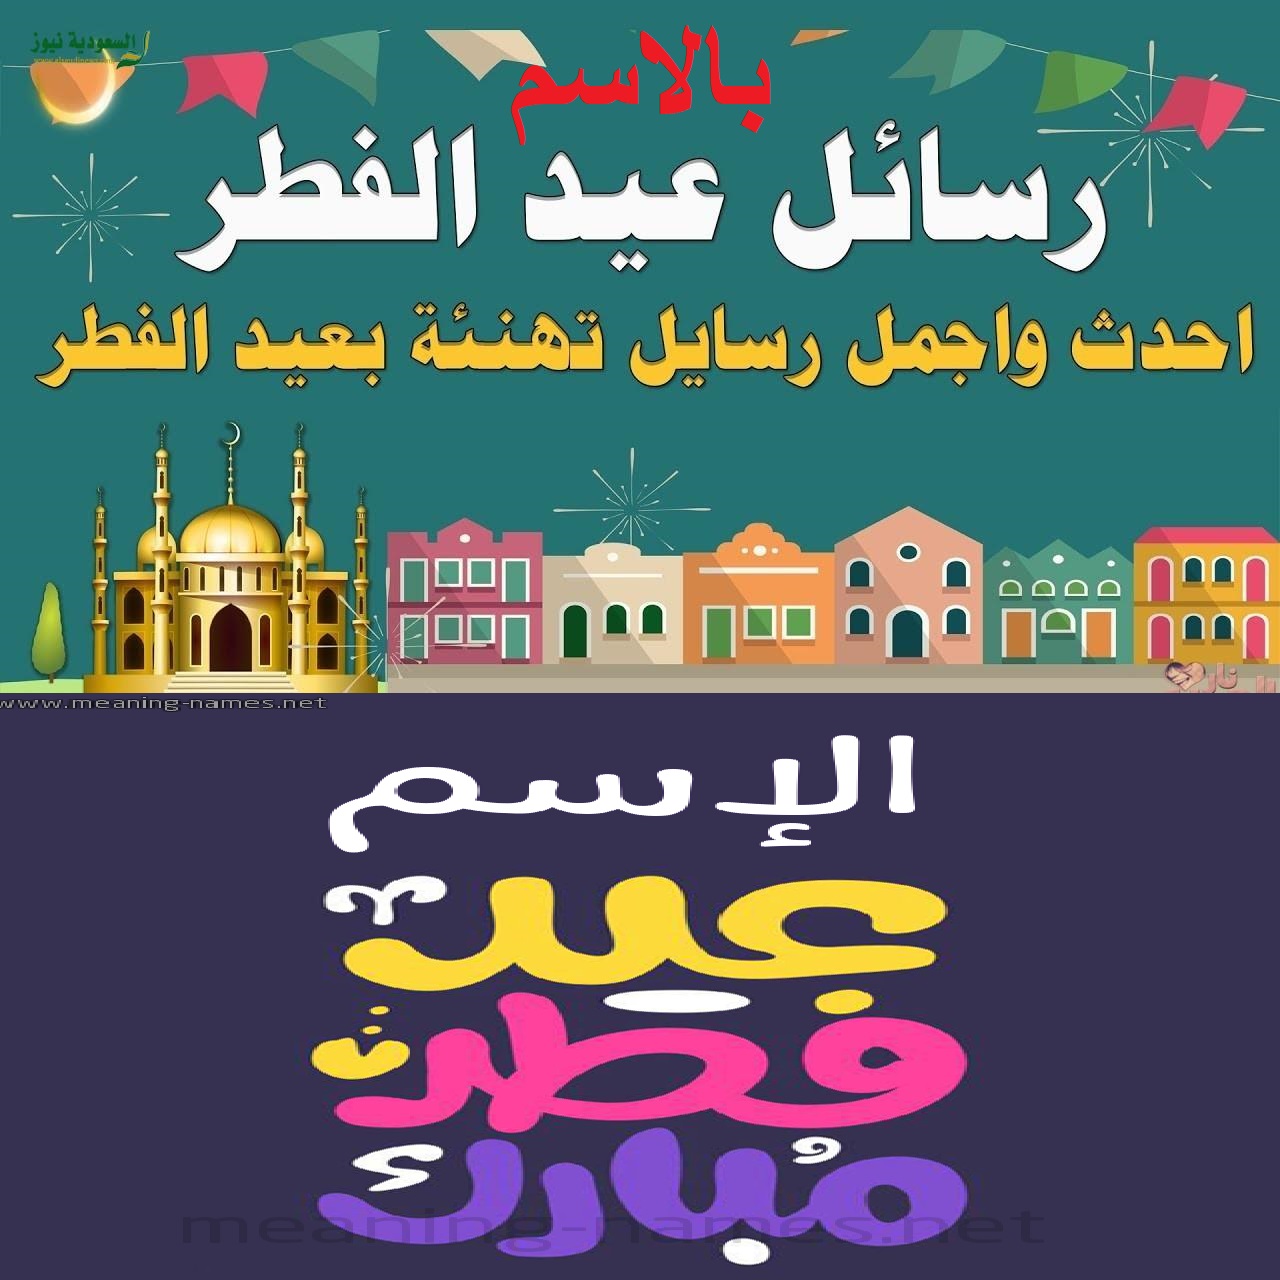 Happy Eid تهنئة عيد الفطر 2021 بالاسم عبارات تهاني بطاقات معايدة ورسائل "تصميم تهنئة العيد"